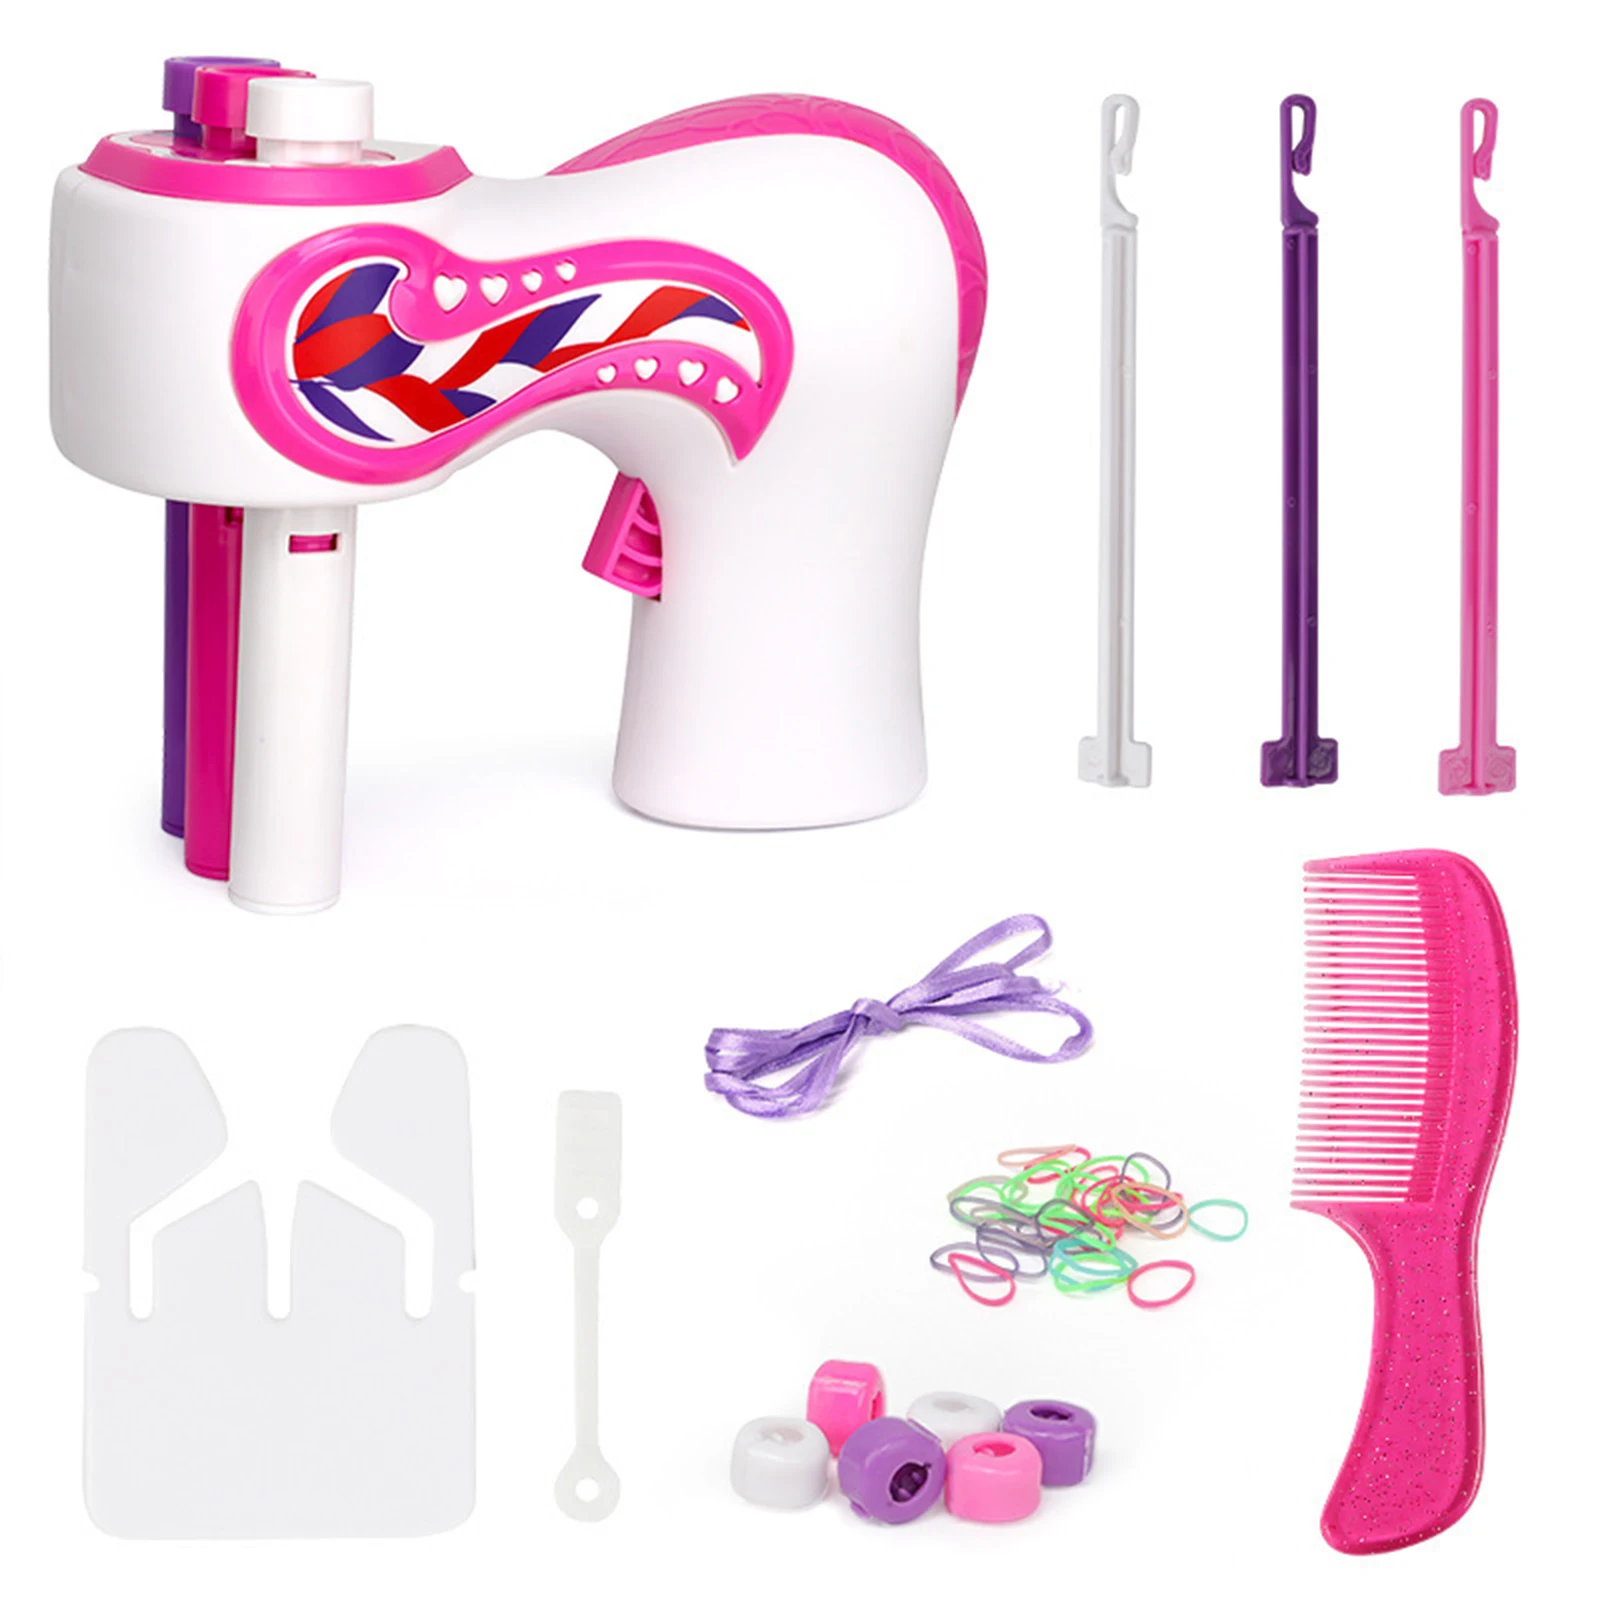 

Автоматическая машинка для плетения волос для девочек, приспособление для самостоятельного завязывания волос, электрический инструмент д...